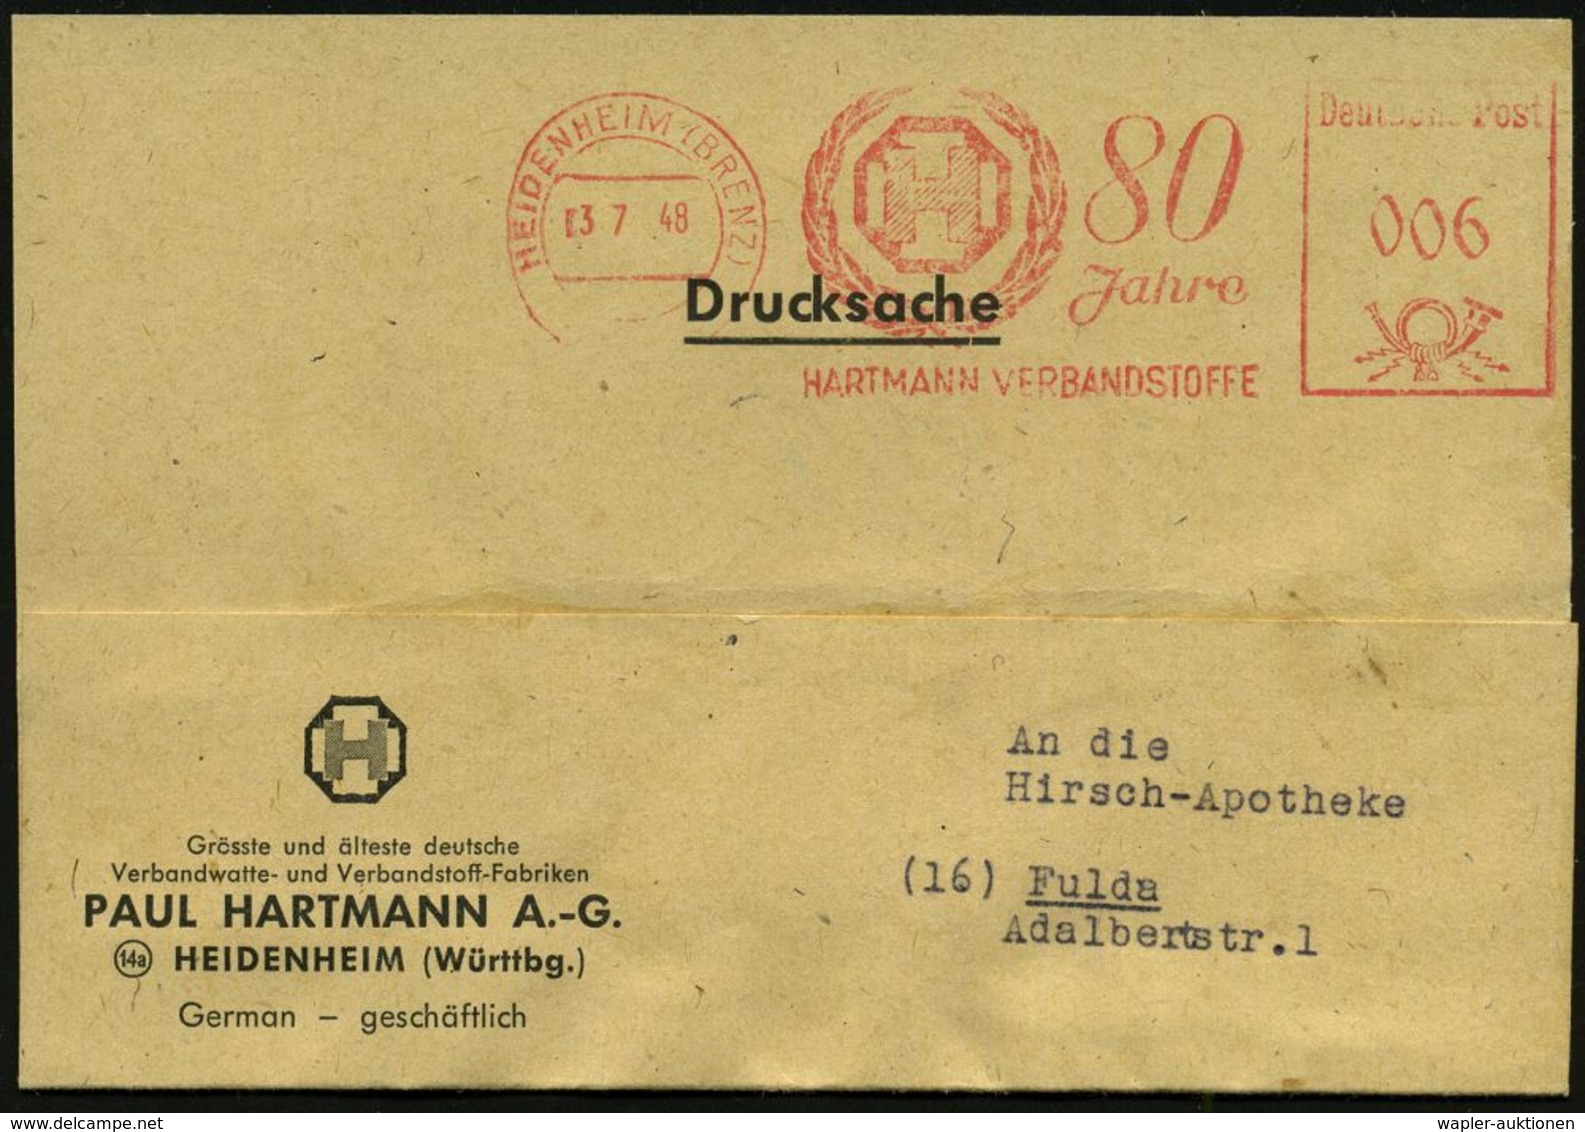 MEDIZINISCHE AUSRÜSTUNG & INSTRUMENTE : HEIDENHEIM (BRENZ)/ 80 Jahre/ HARTMANN VERBANDSSTOFFE 1948 (3.7.) Jubil.-AFS (Mo - Medicine